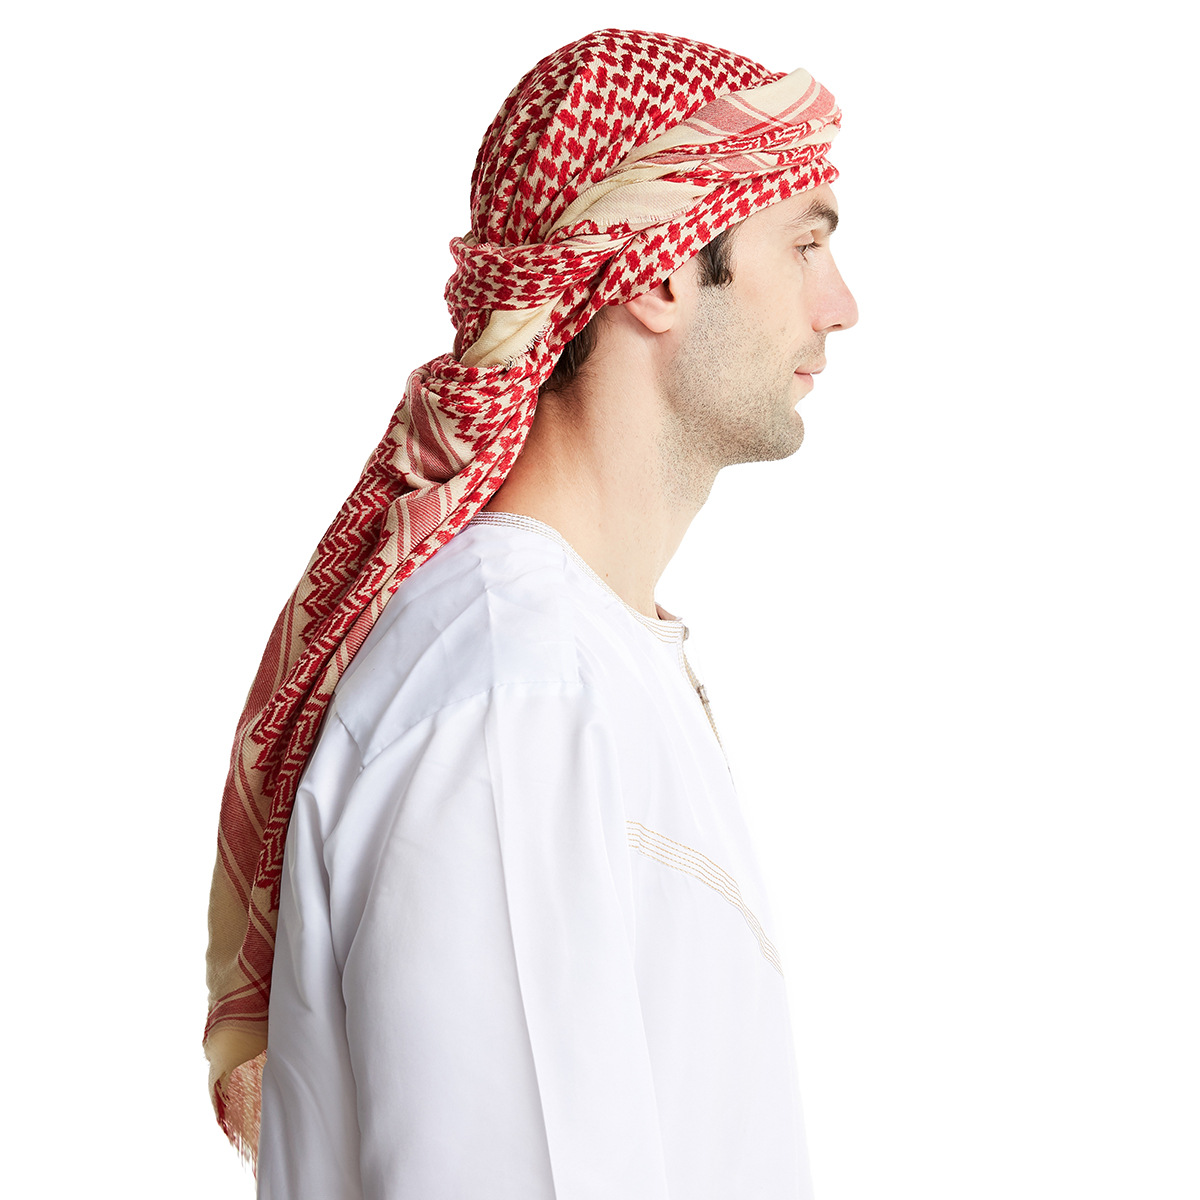 穆斯林 伊斯兰 阿拉伯 复古民族男士高端 羊毛男士头巾现货 hs182